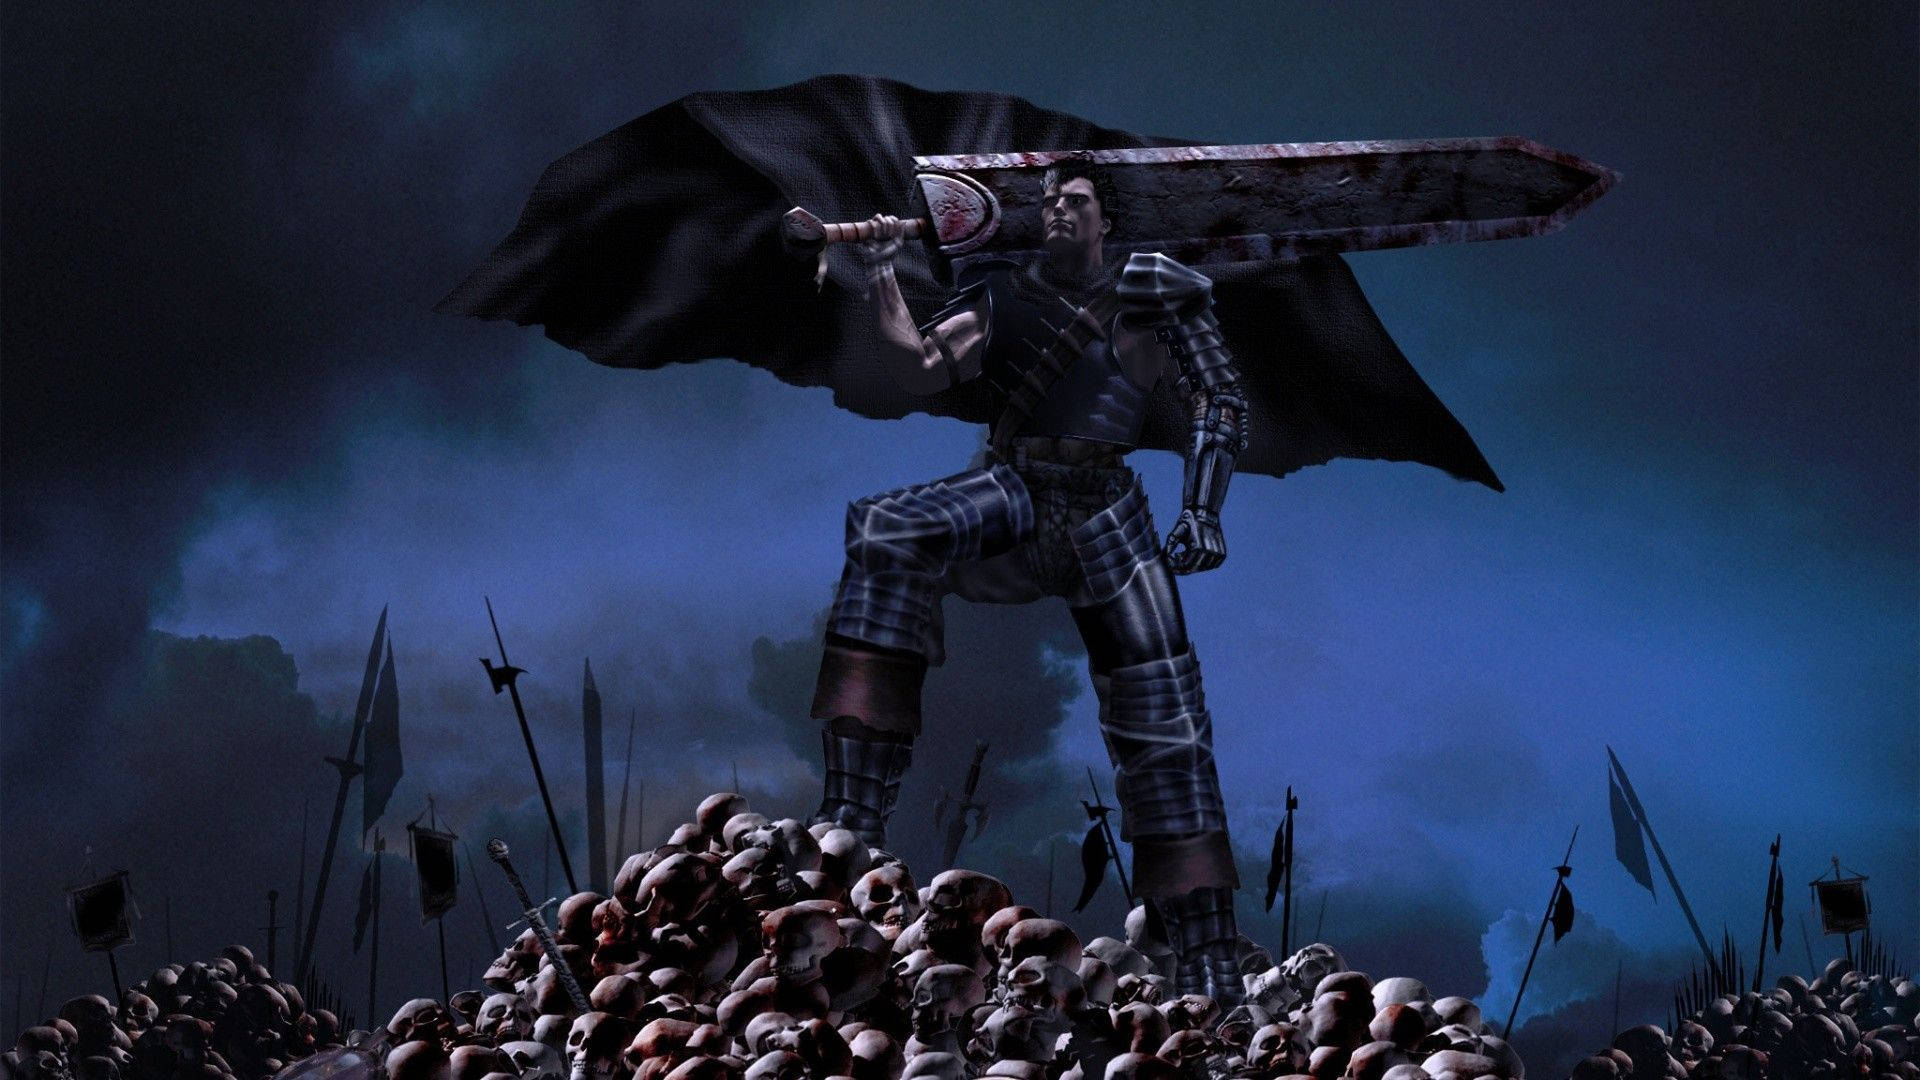 "Guts, the feared swordsman, ready for an epic battle in Berserk" Wallpaper